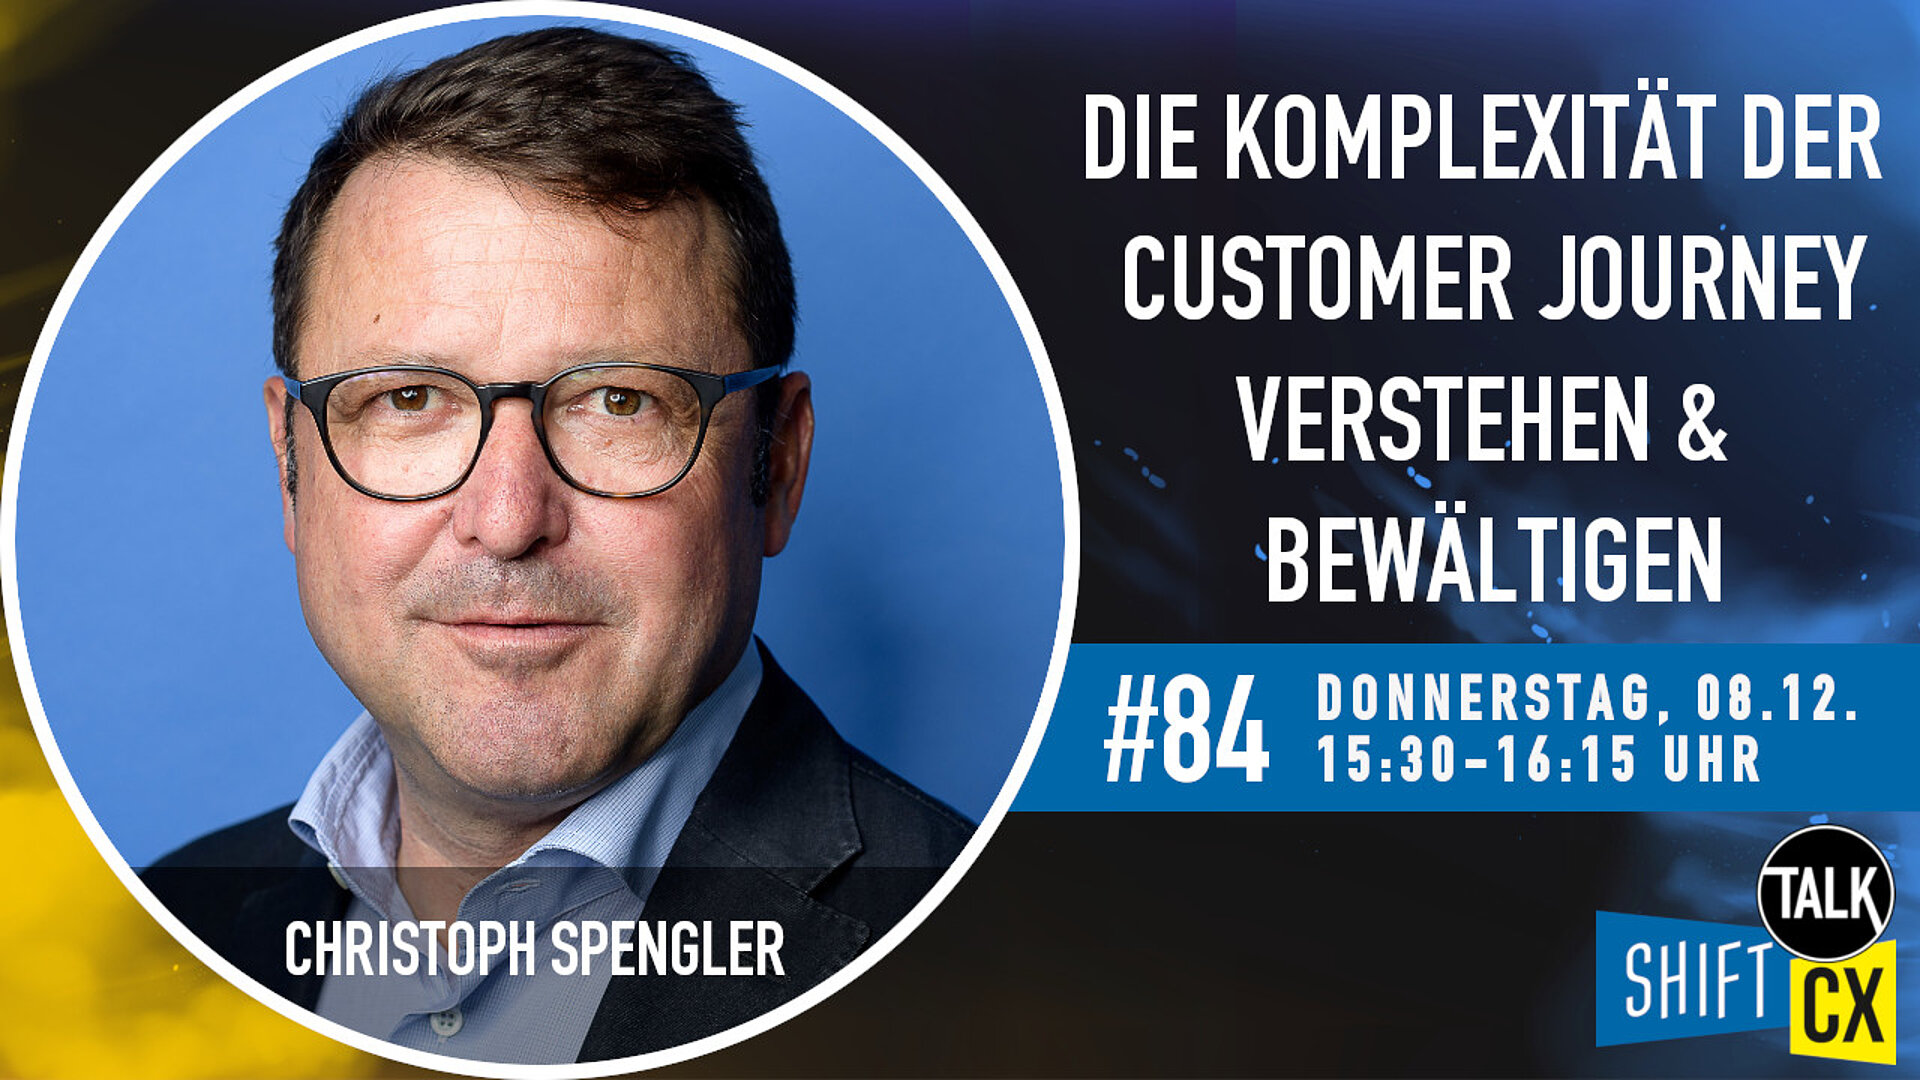 Im Gespräch mit Christoph Spengler zur Herausforderung der Komplexität in der Customer Journey